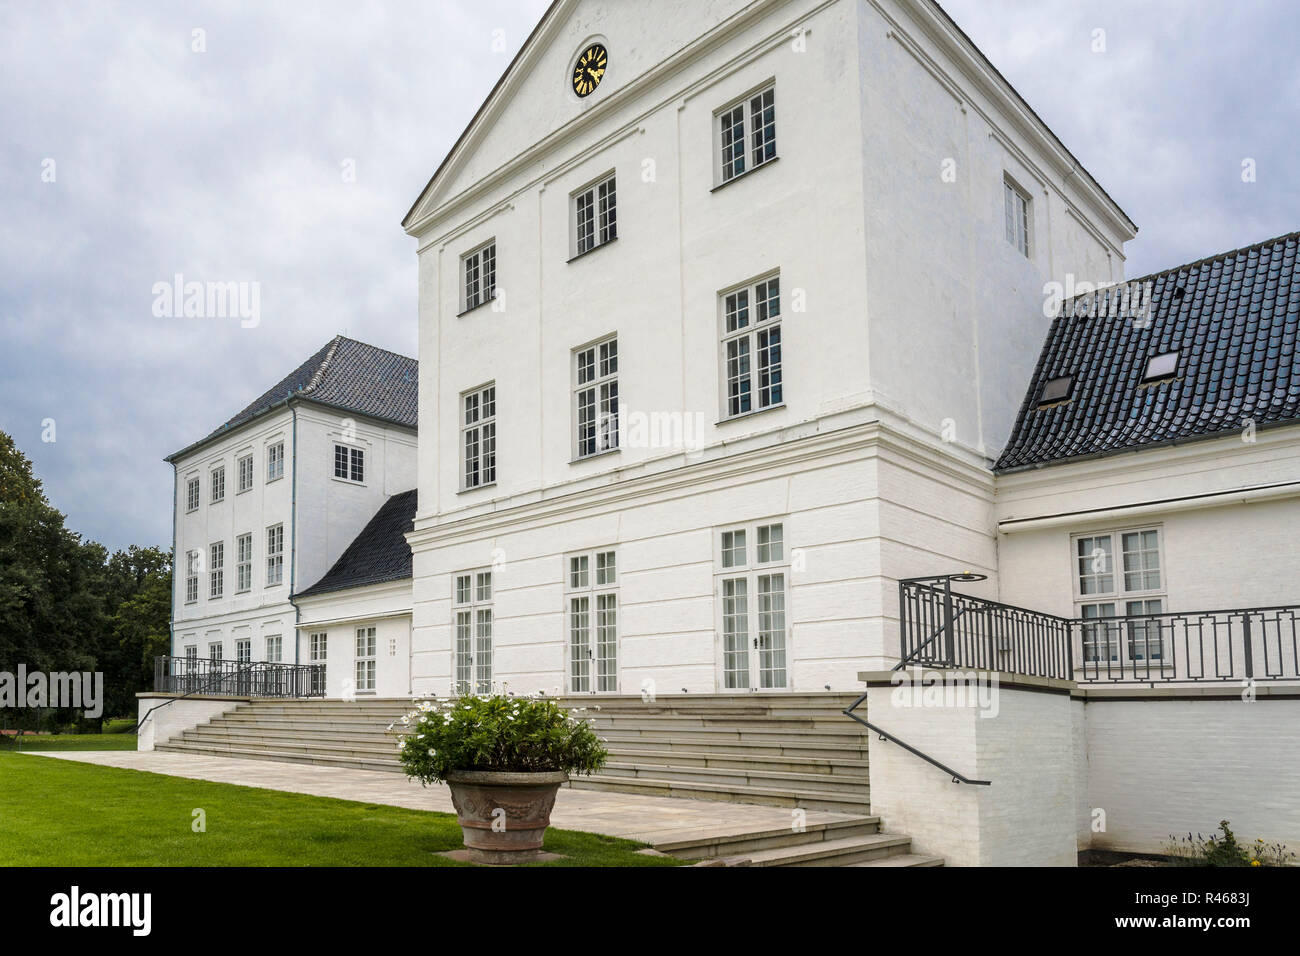 Dänemark: Schloss (Gravenstein dän. Nahe Sonderburg Gråsten ranura), Foto de stock